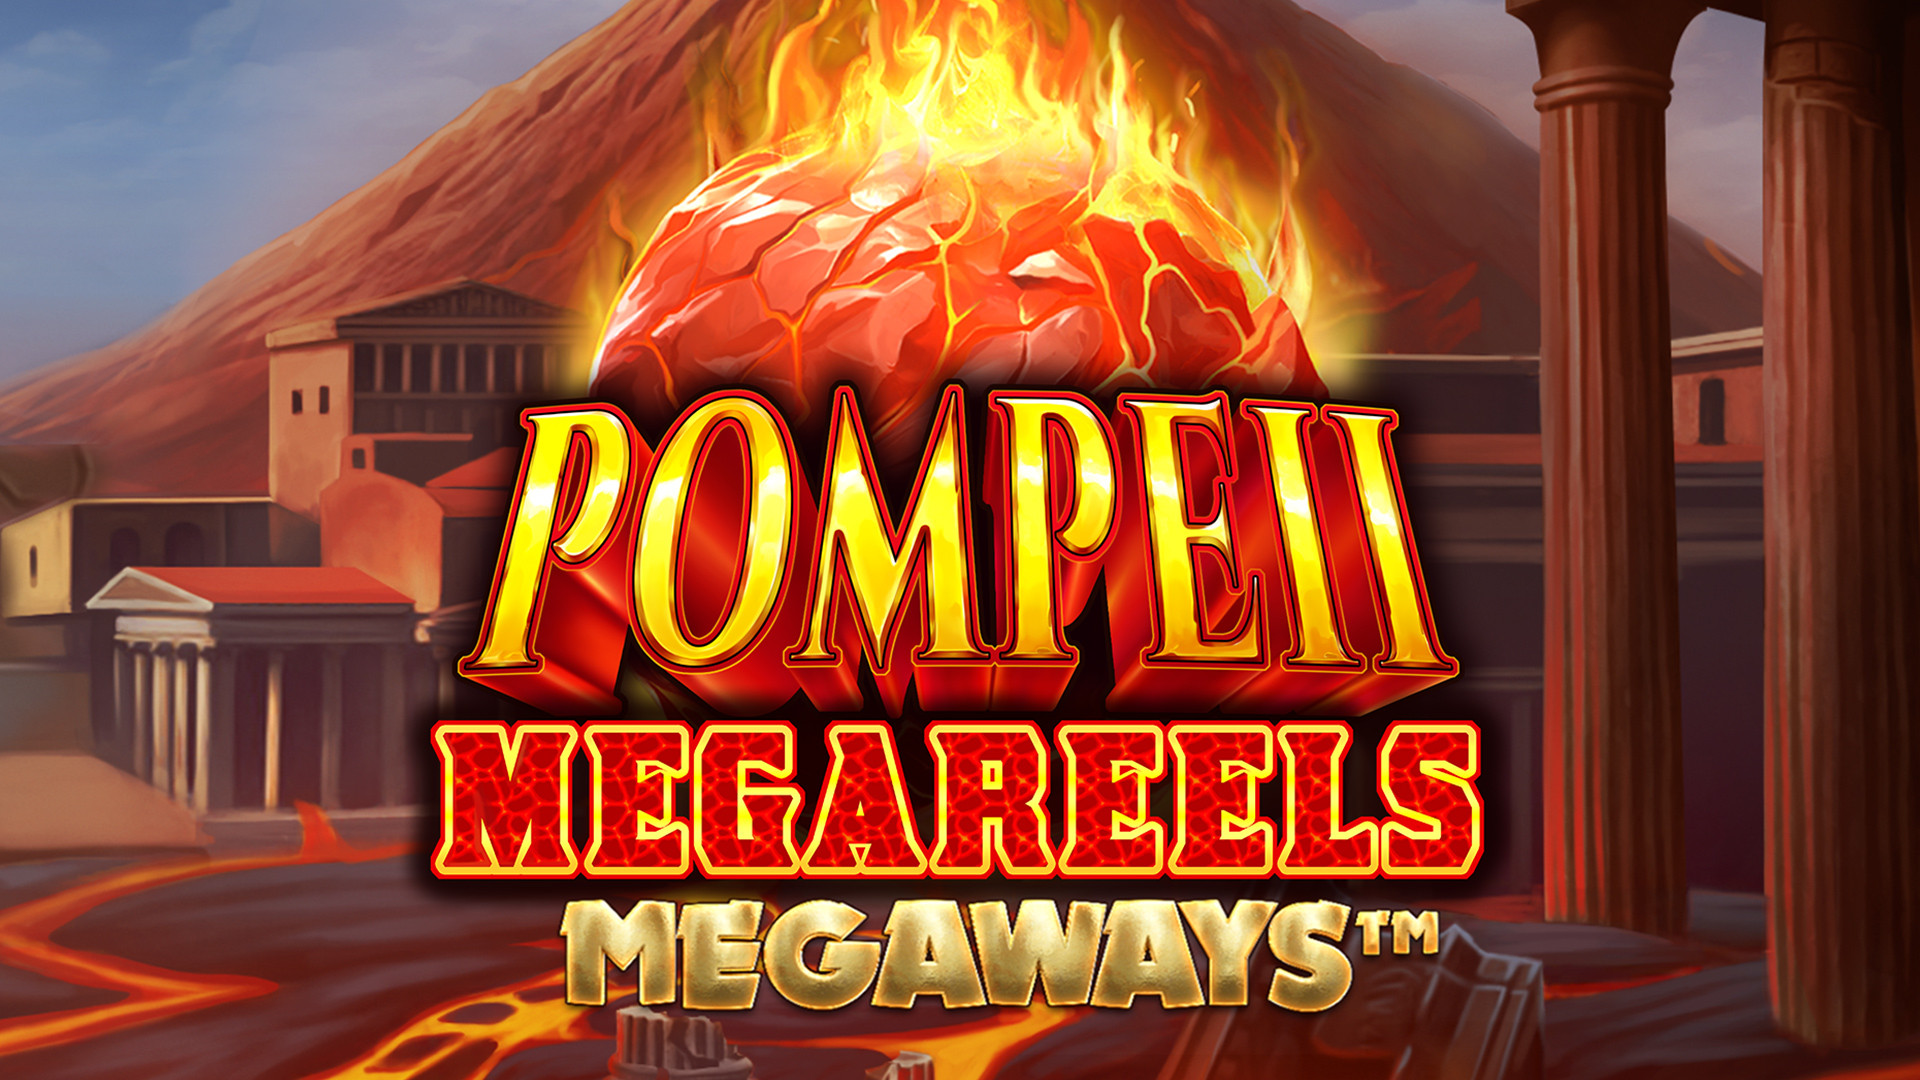 Pompeii Megareels MEGAWAYS